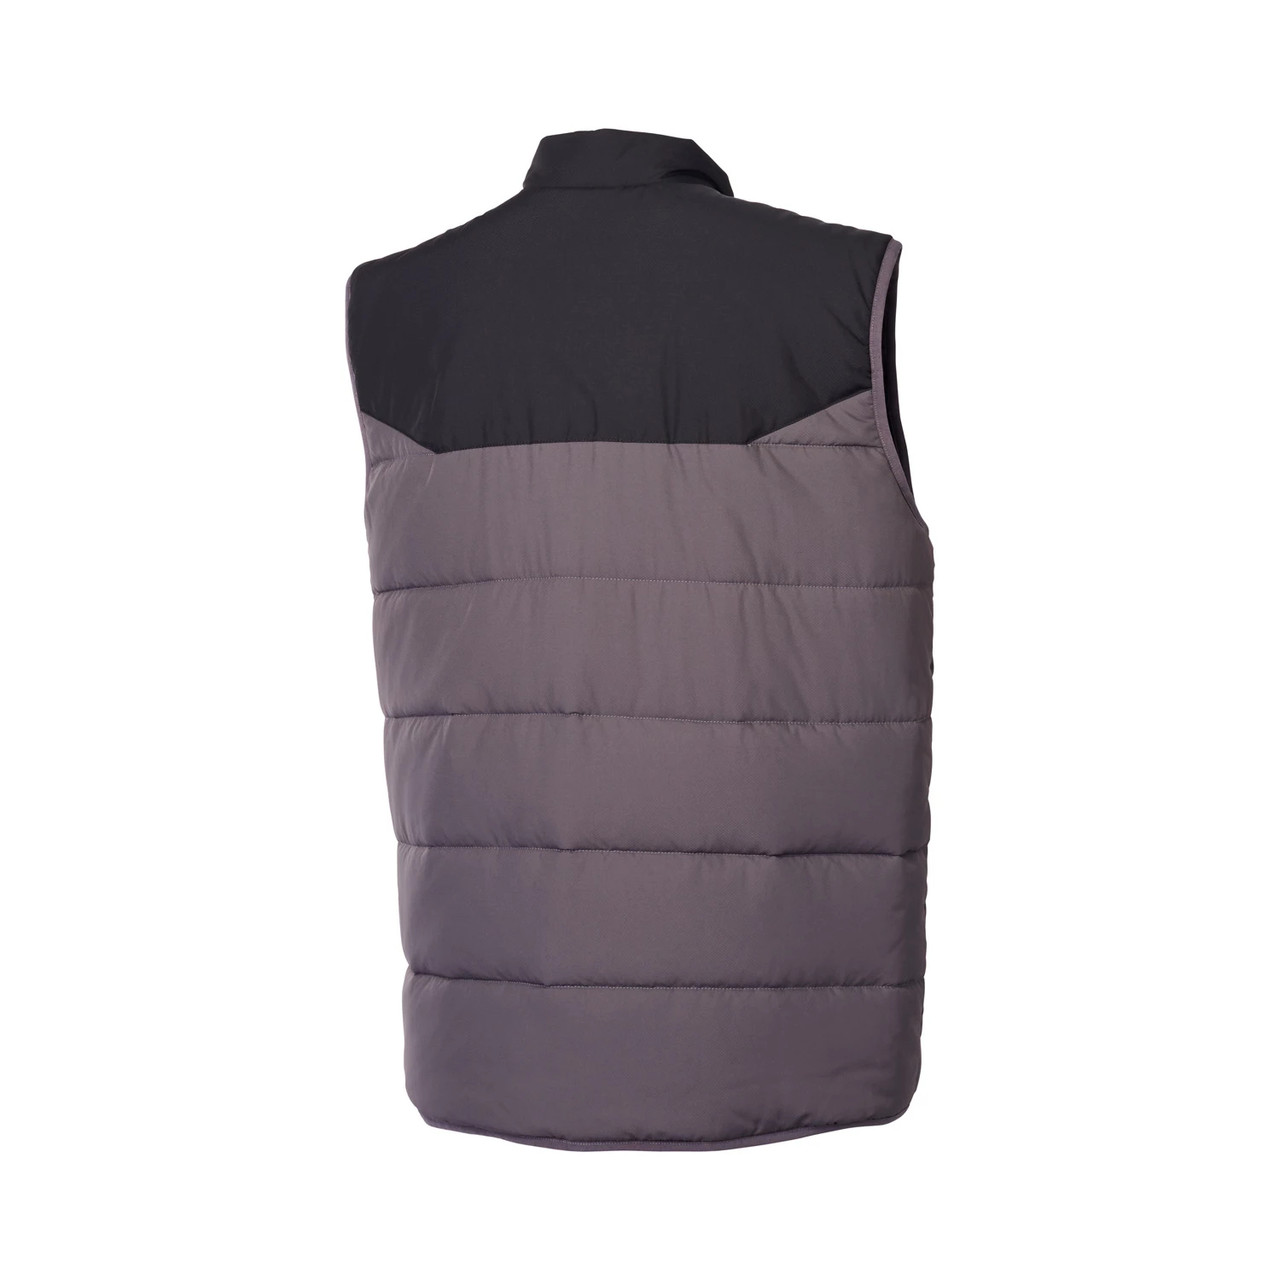 Polaris New OEM Black/Gray Men's Reversible Windbreak Revolve Vest, 286256512